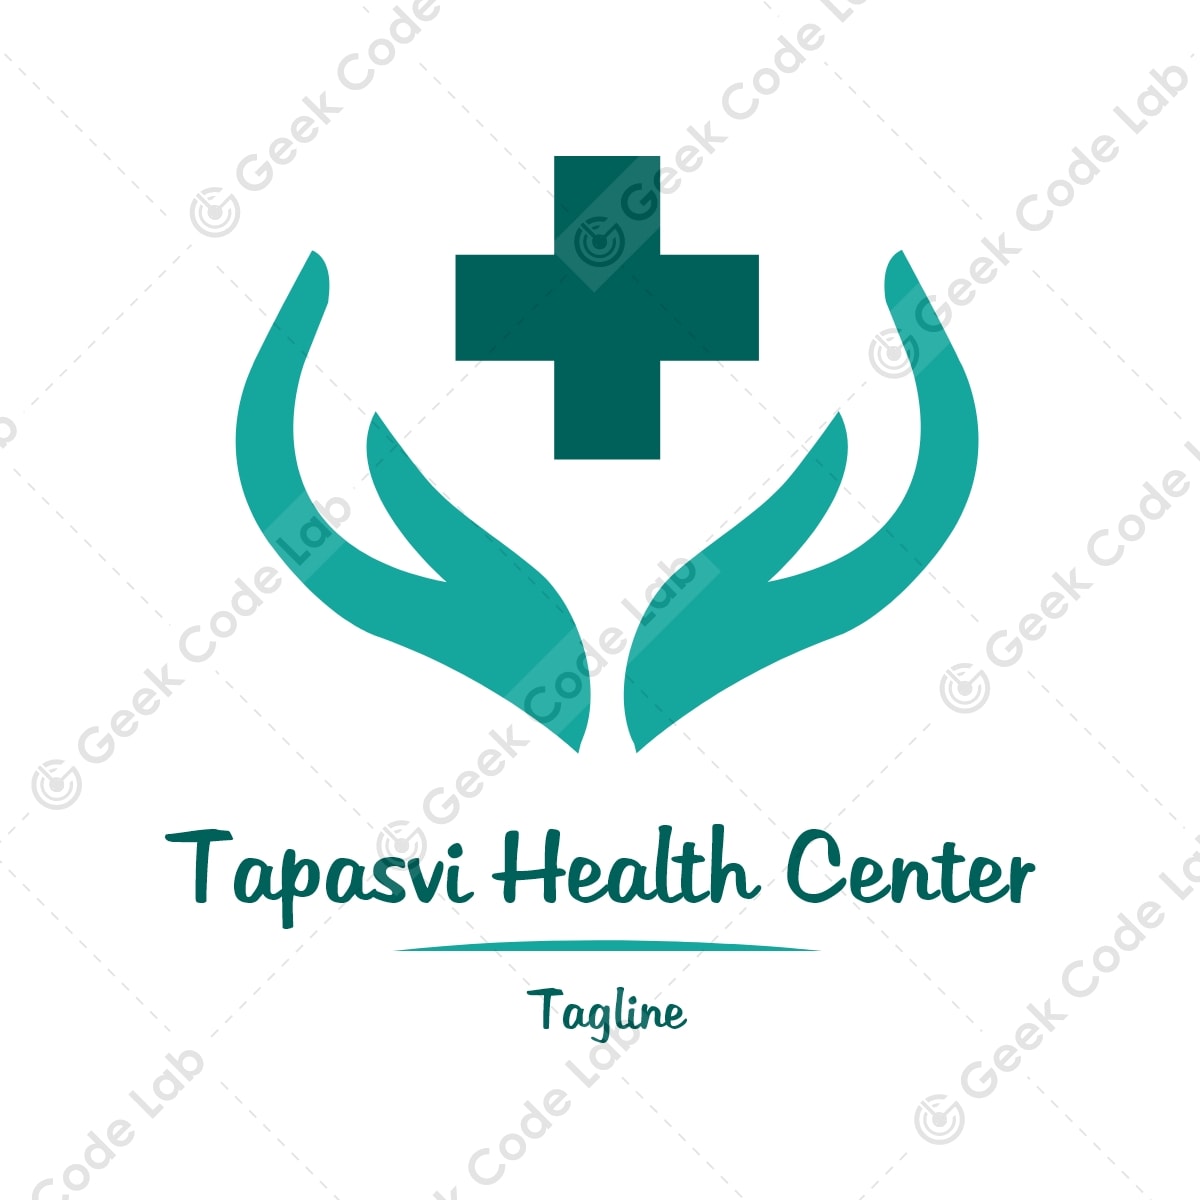 Tapasvi Health Center